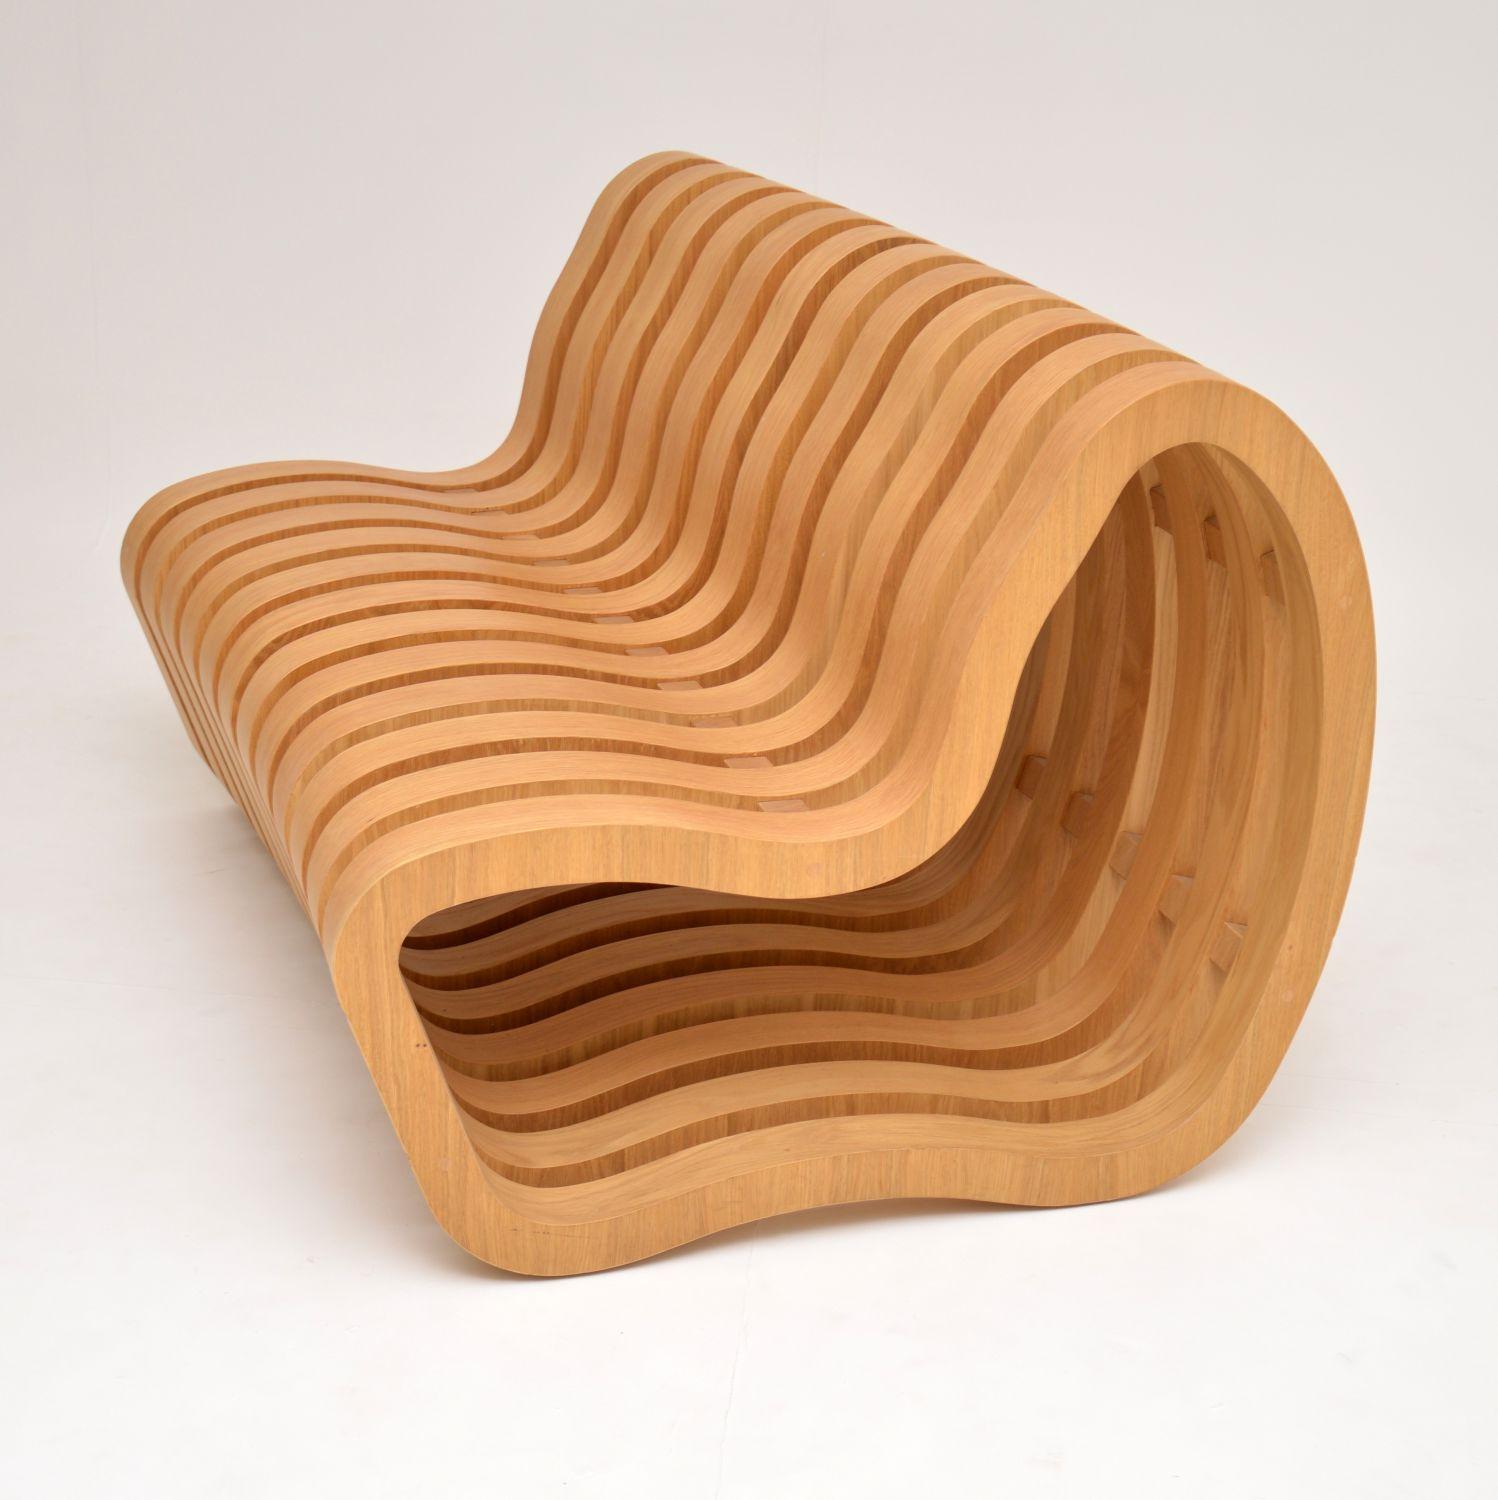 Wood Modernist “Curve Bench” by Nina Moeller Designs